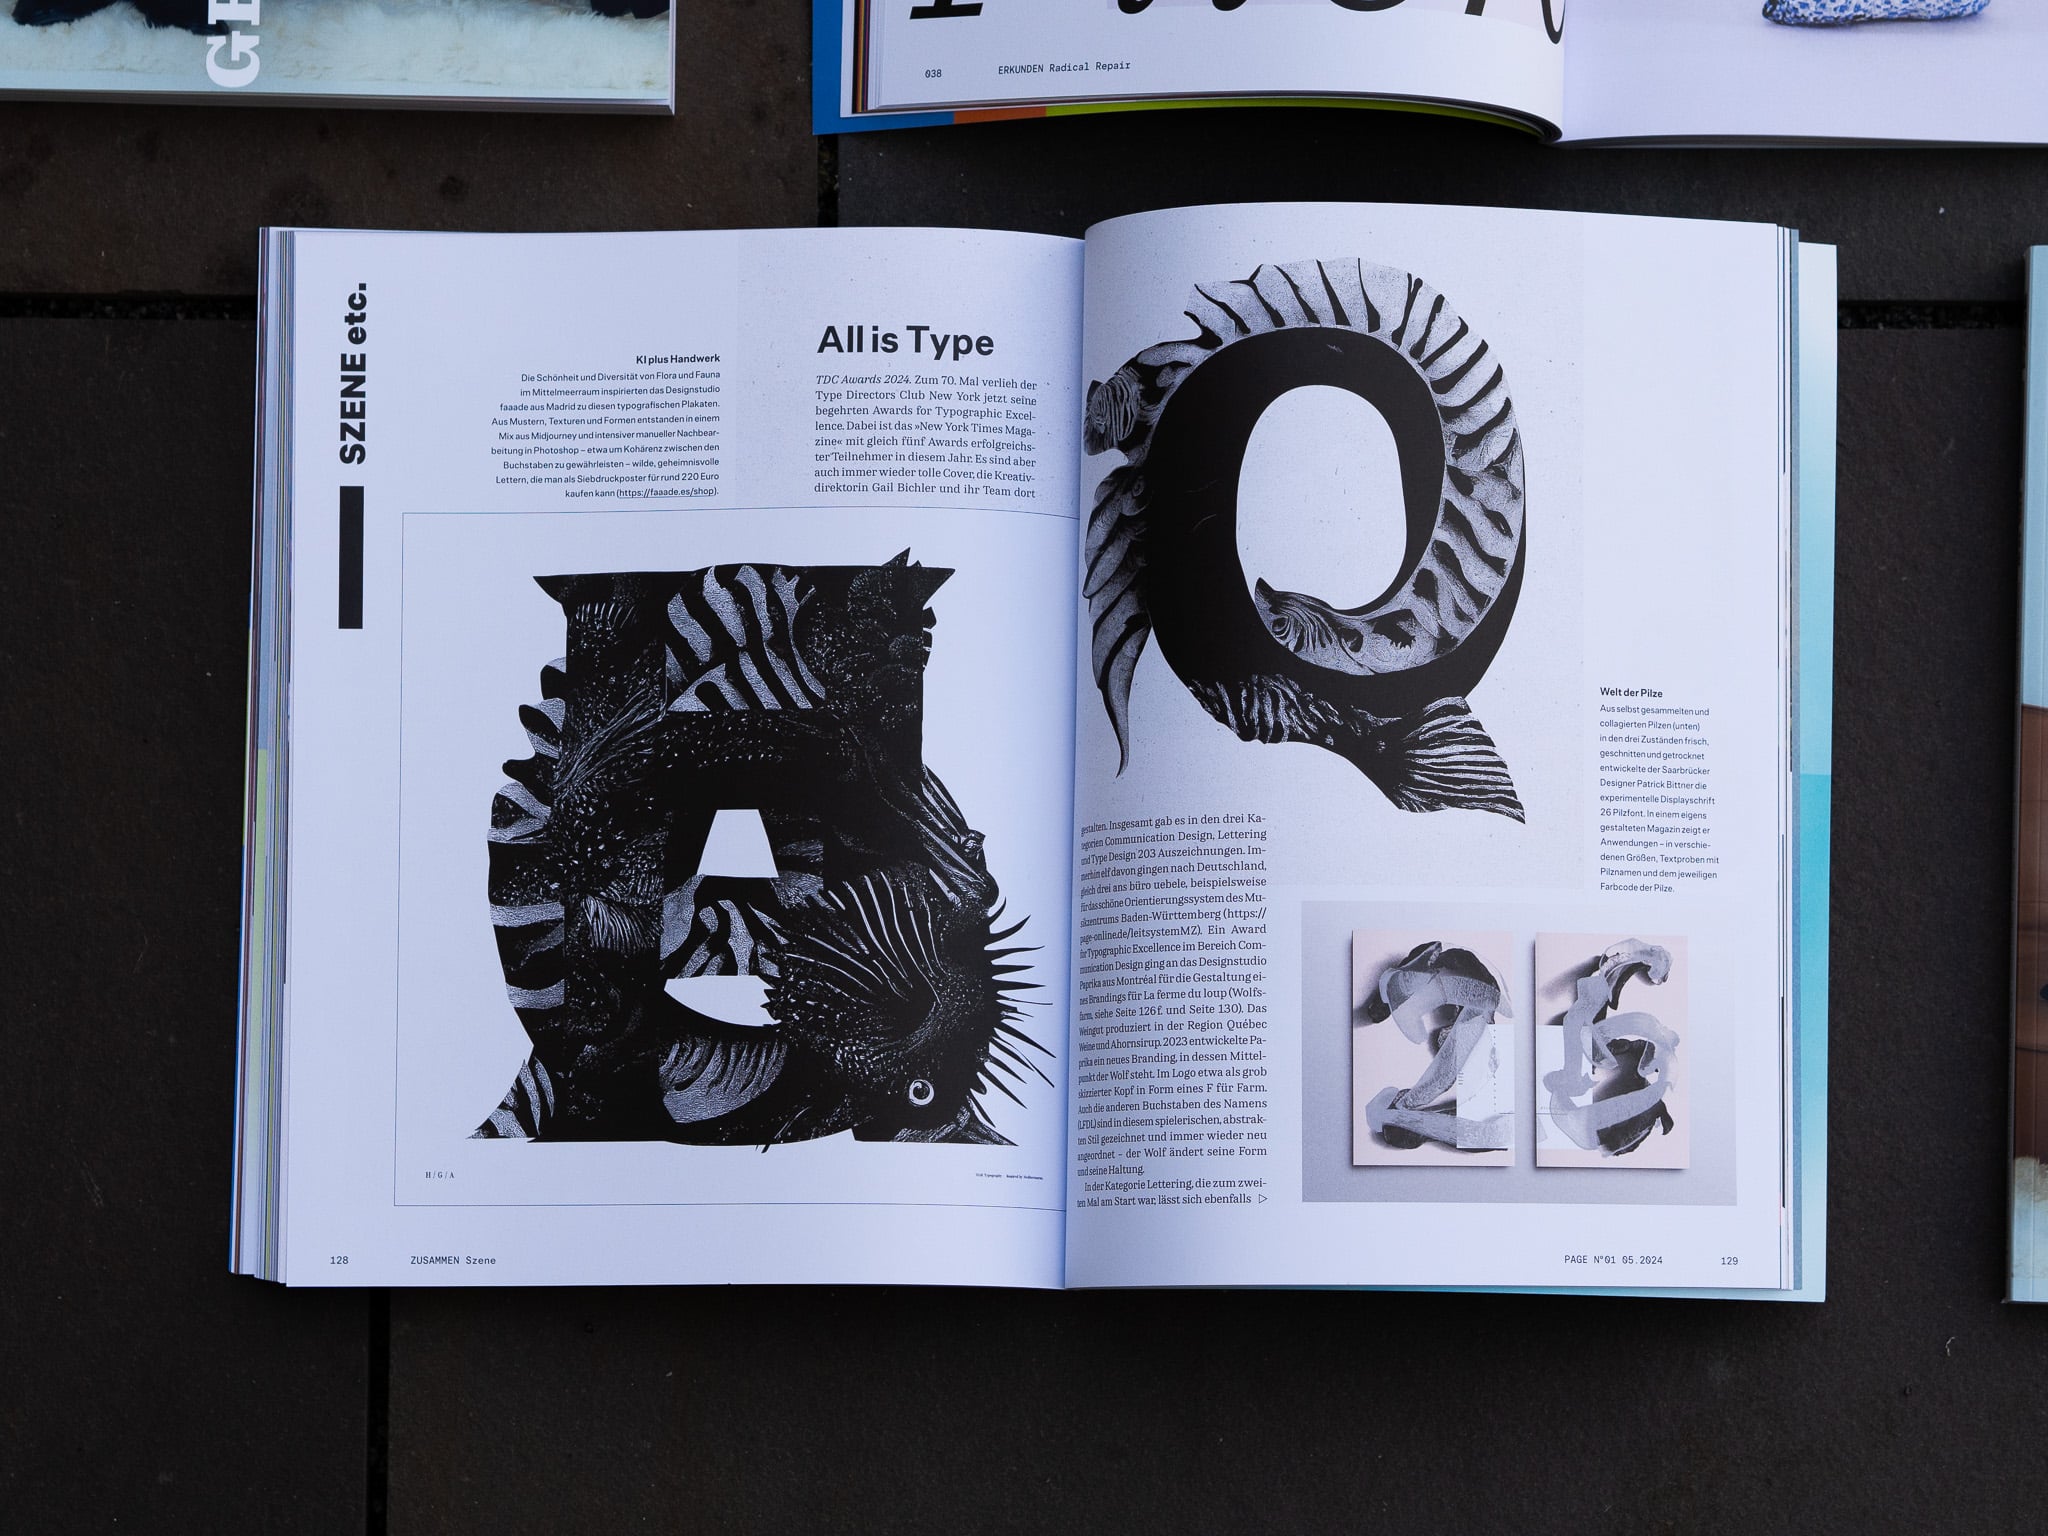 Eine Doppelseite zeigt zu Typografie geformte Tiere in schwarz-weiß neben der Headline »All is Type«